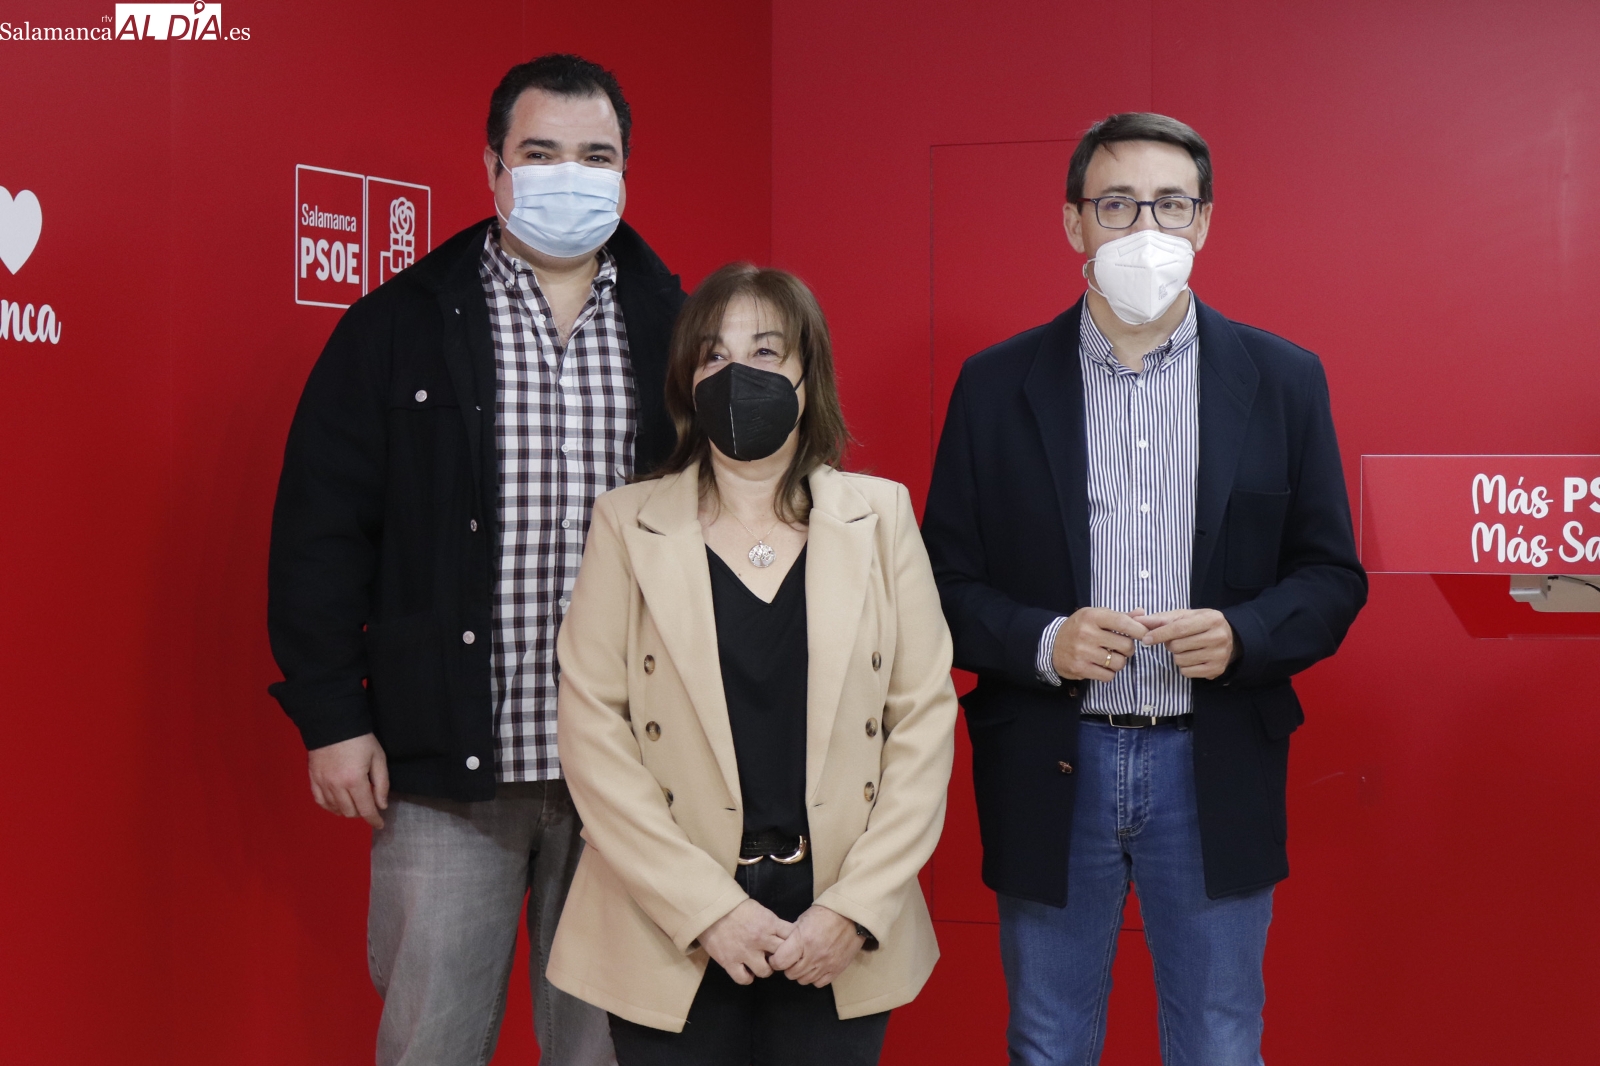 Acto de inicio de la campaña electoral en la sede del PSOE de Salamanca. Fotos: Guillermo García